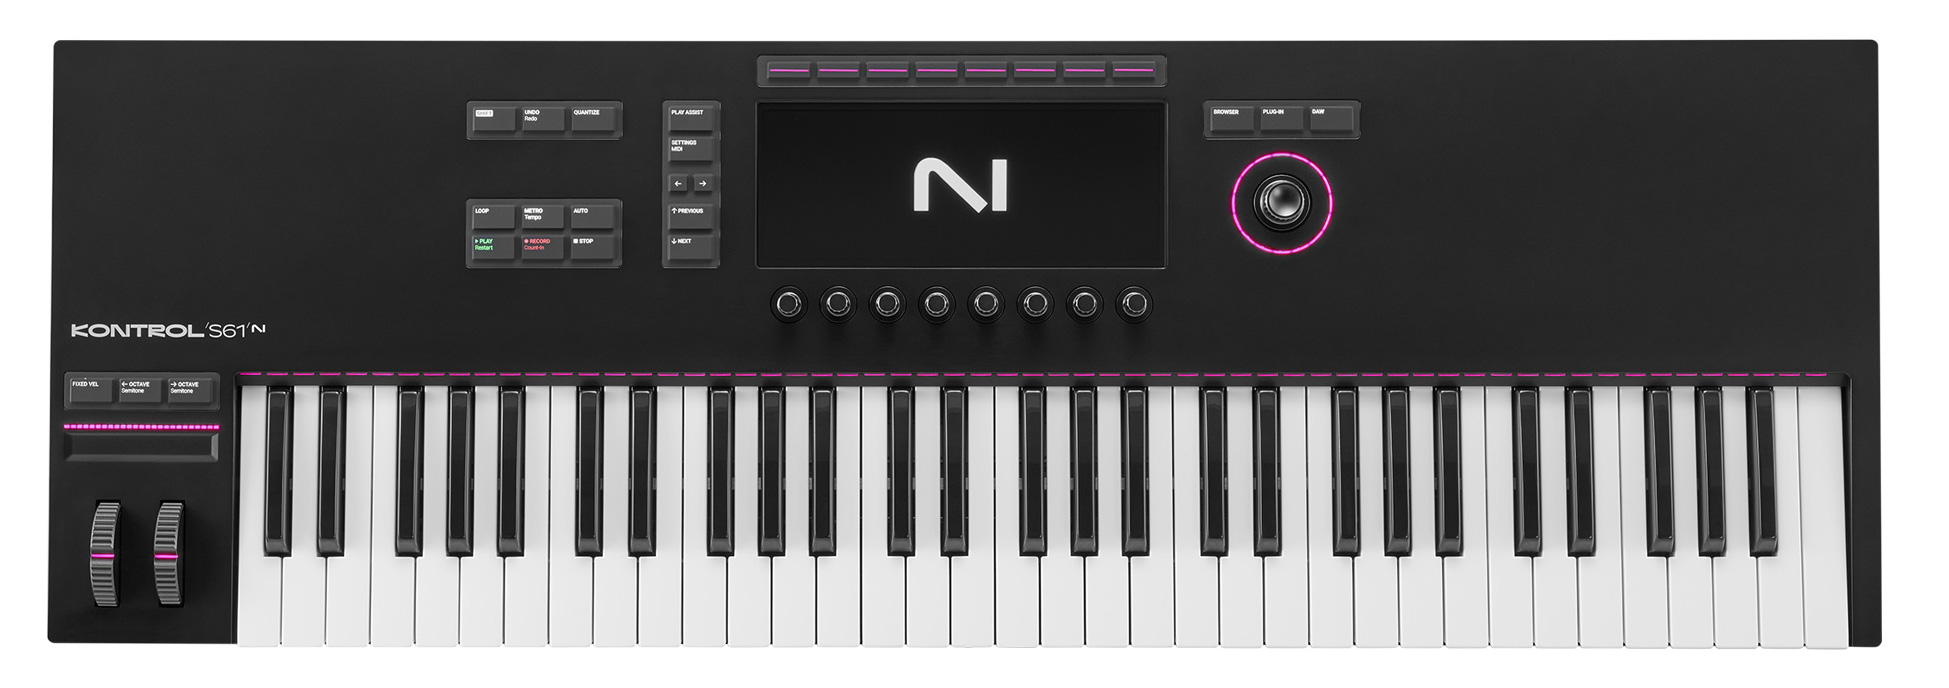 Komplete Kontrol S61 MK3 ofrece un teclado Fatar de alta calidad